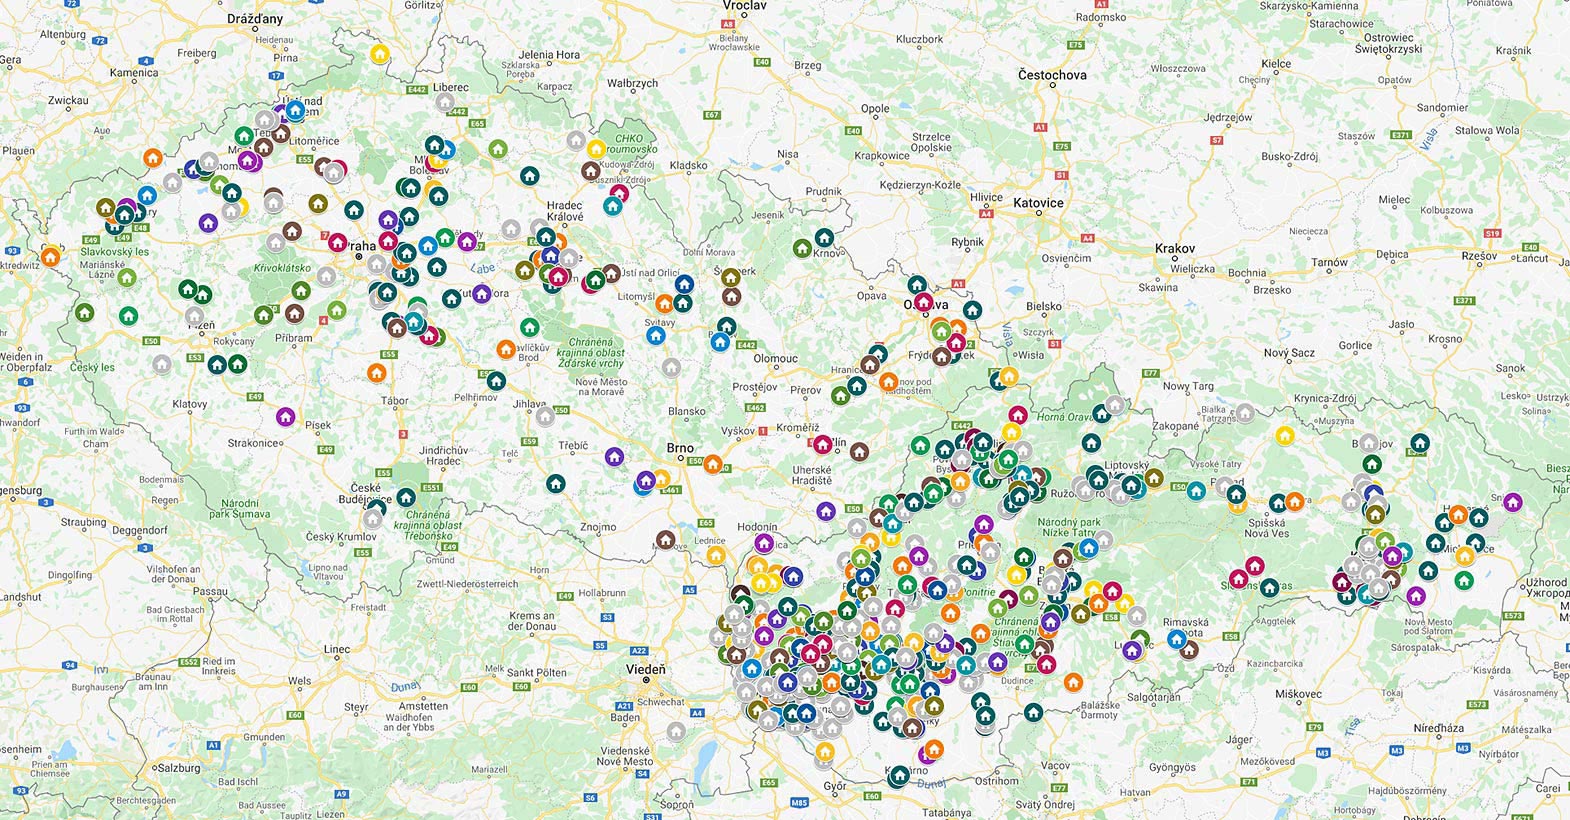 Mapa našich projektov v rámci Slovenska a v Čechách